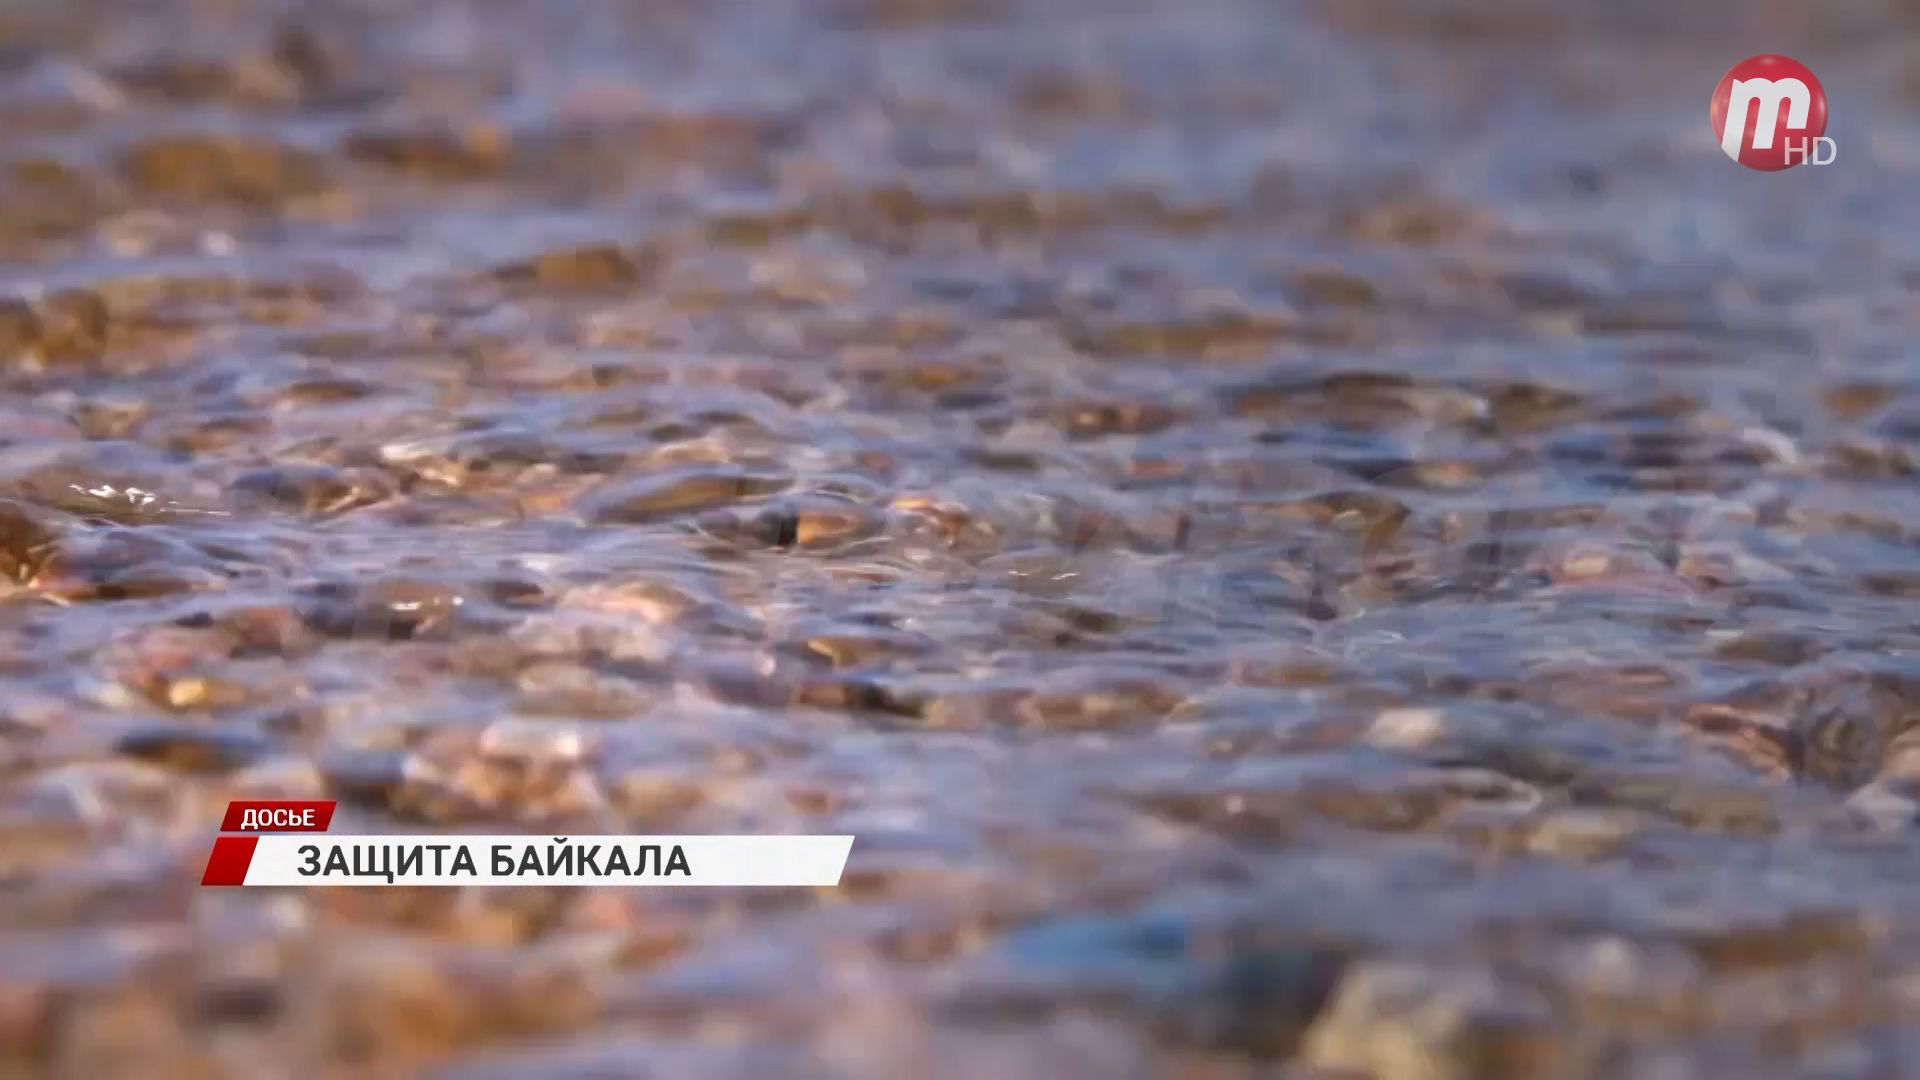 Правительство направит дополнительные средства на защиту Байкала